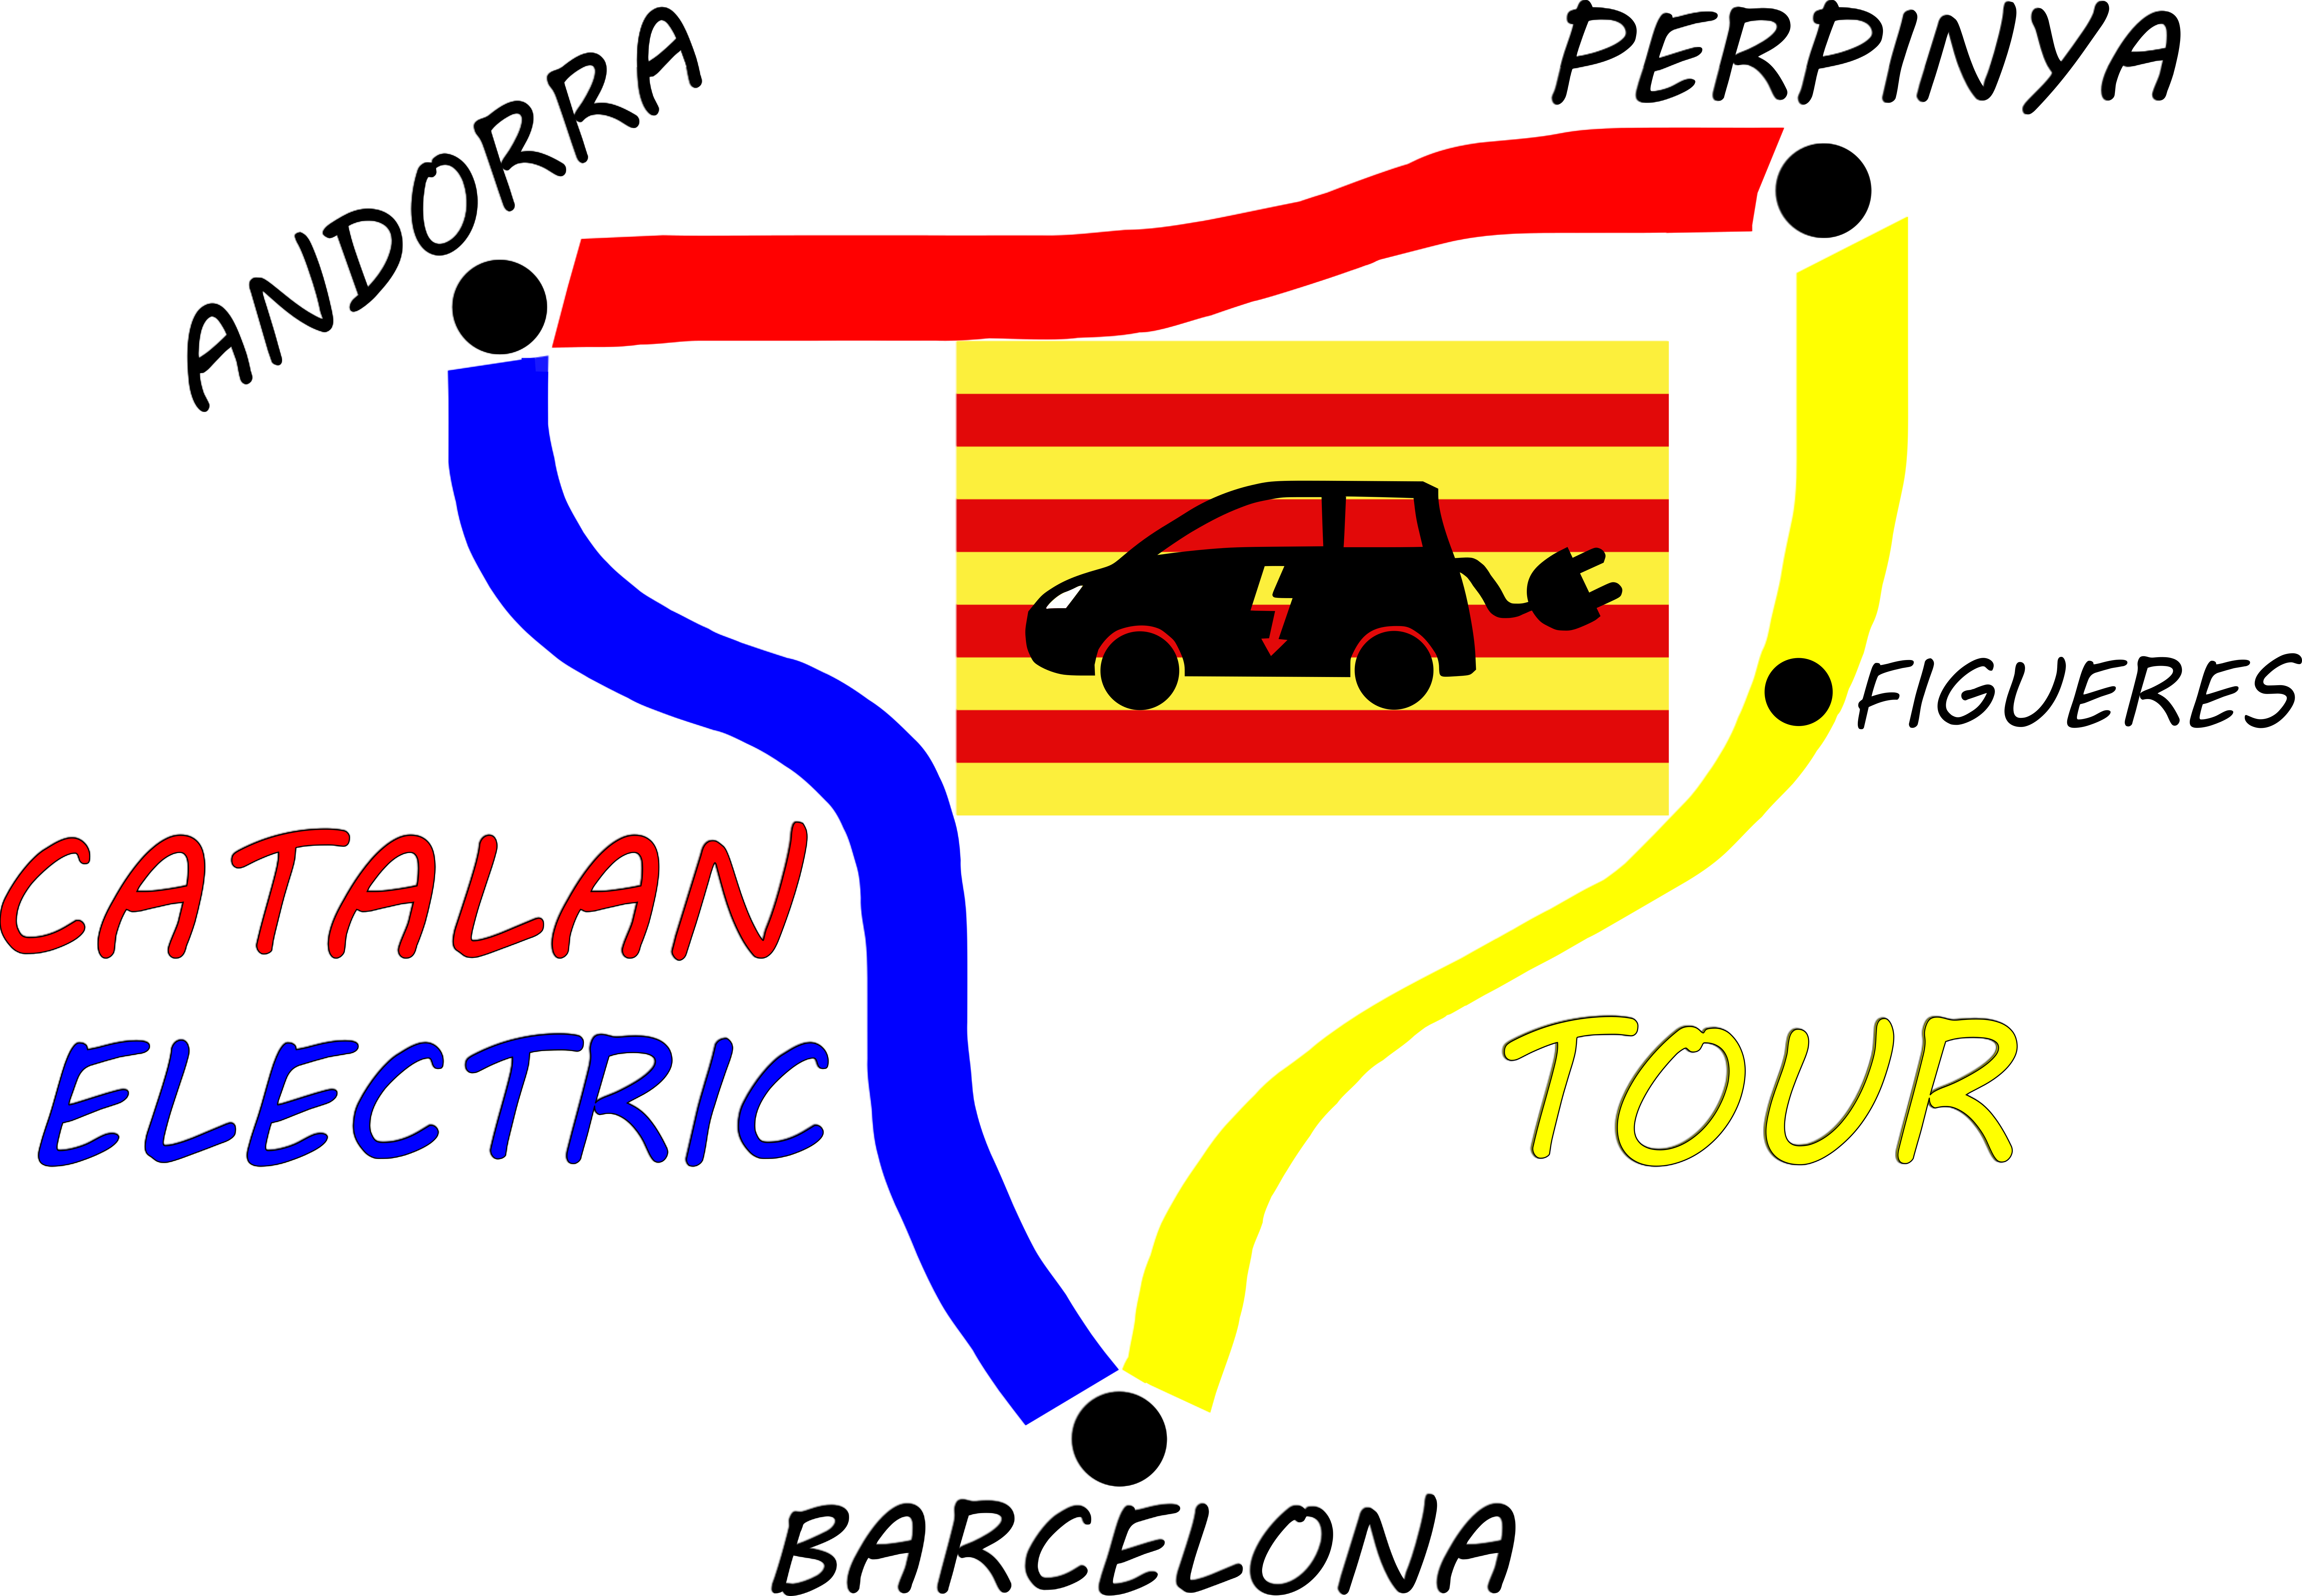 (c) Catalanelectrictour.wordpress.com